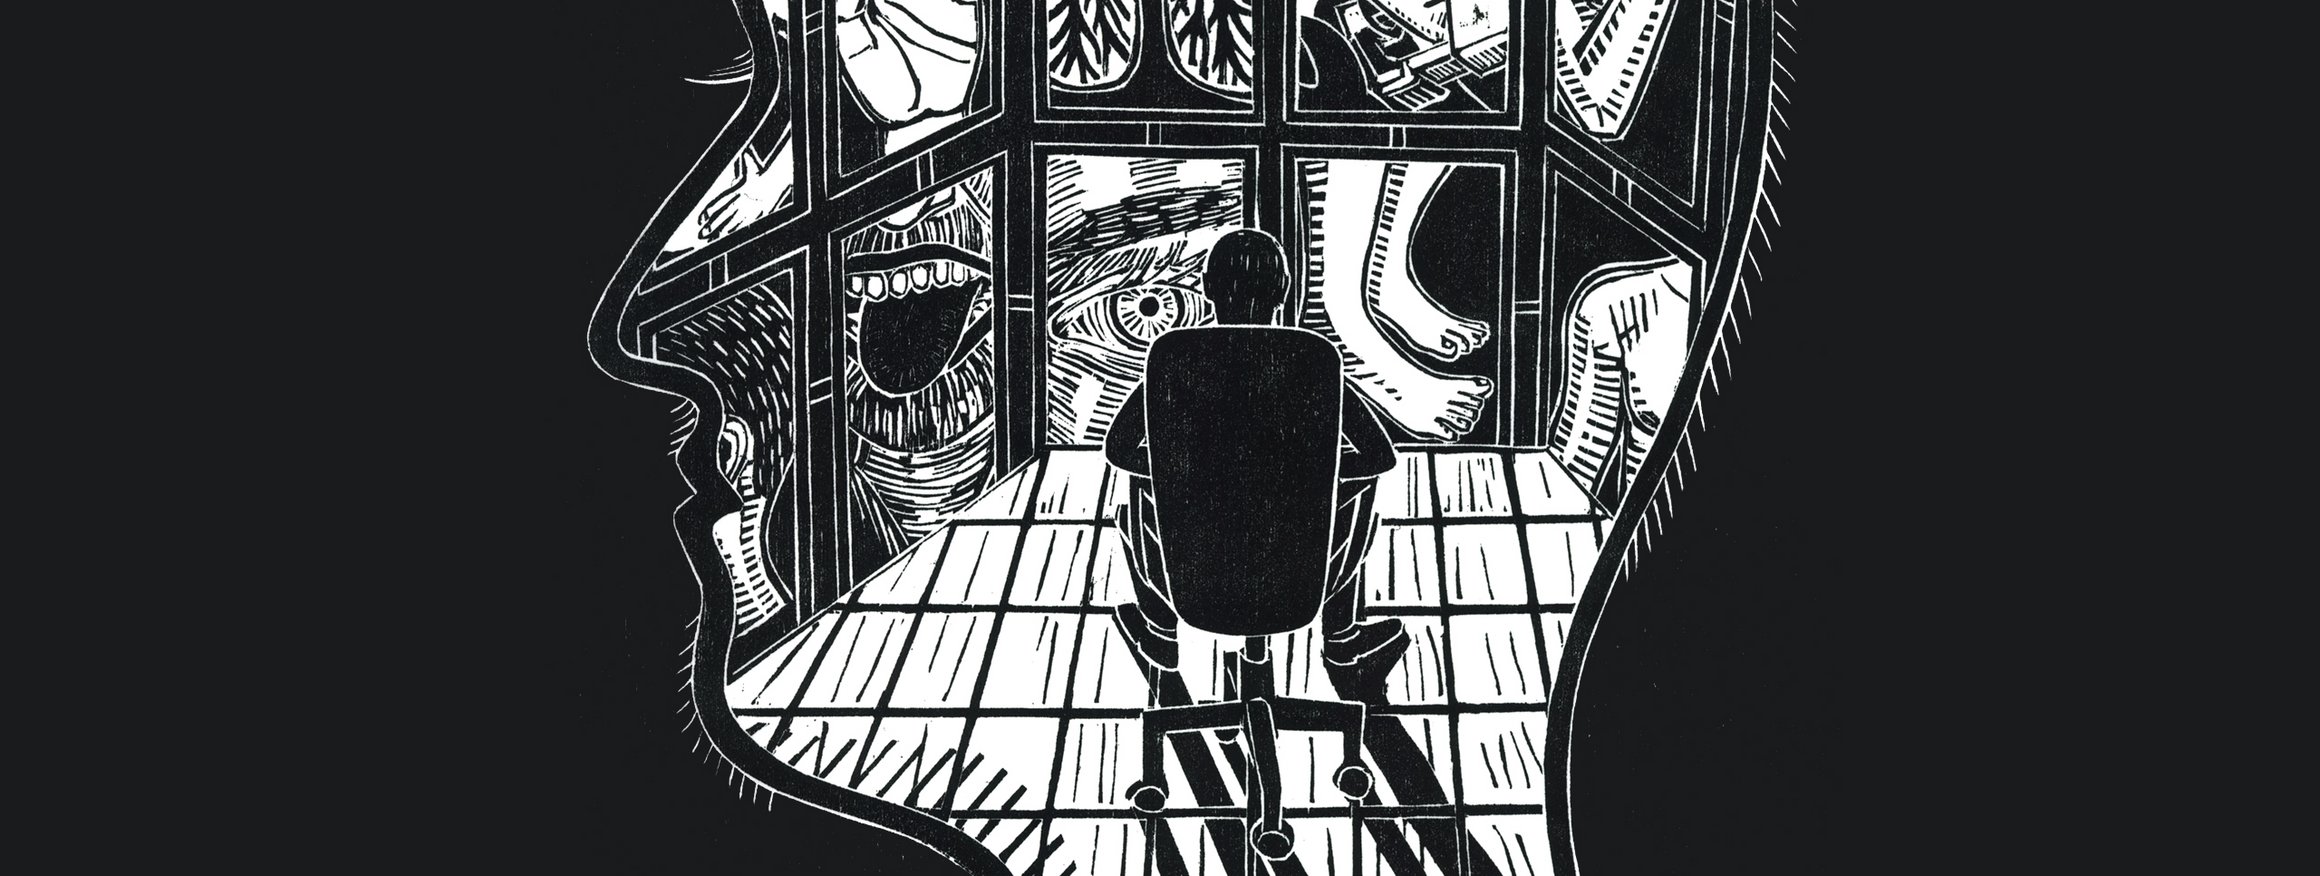 Die Illustration zeigt eine großen Kopf mit einer Person darin, die in einem Bürostuhl sitzt und aus einer Fensterfront schaut. Die Fensterfront besteht aus vielen Fenstern, die auf Organe und Körperteile blicken lassen.